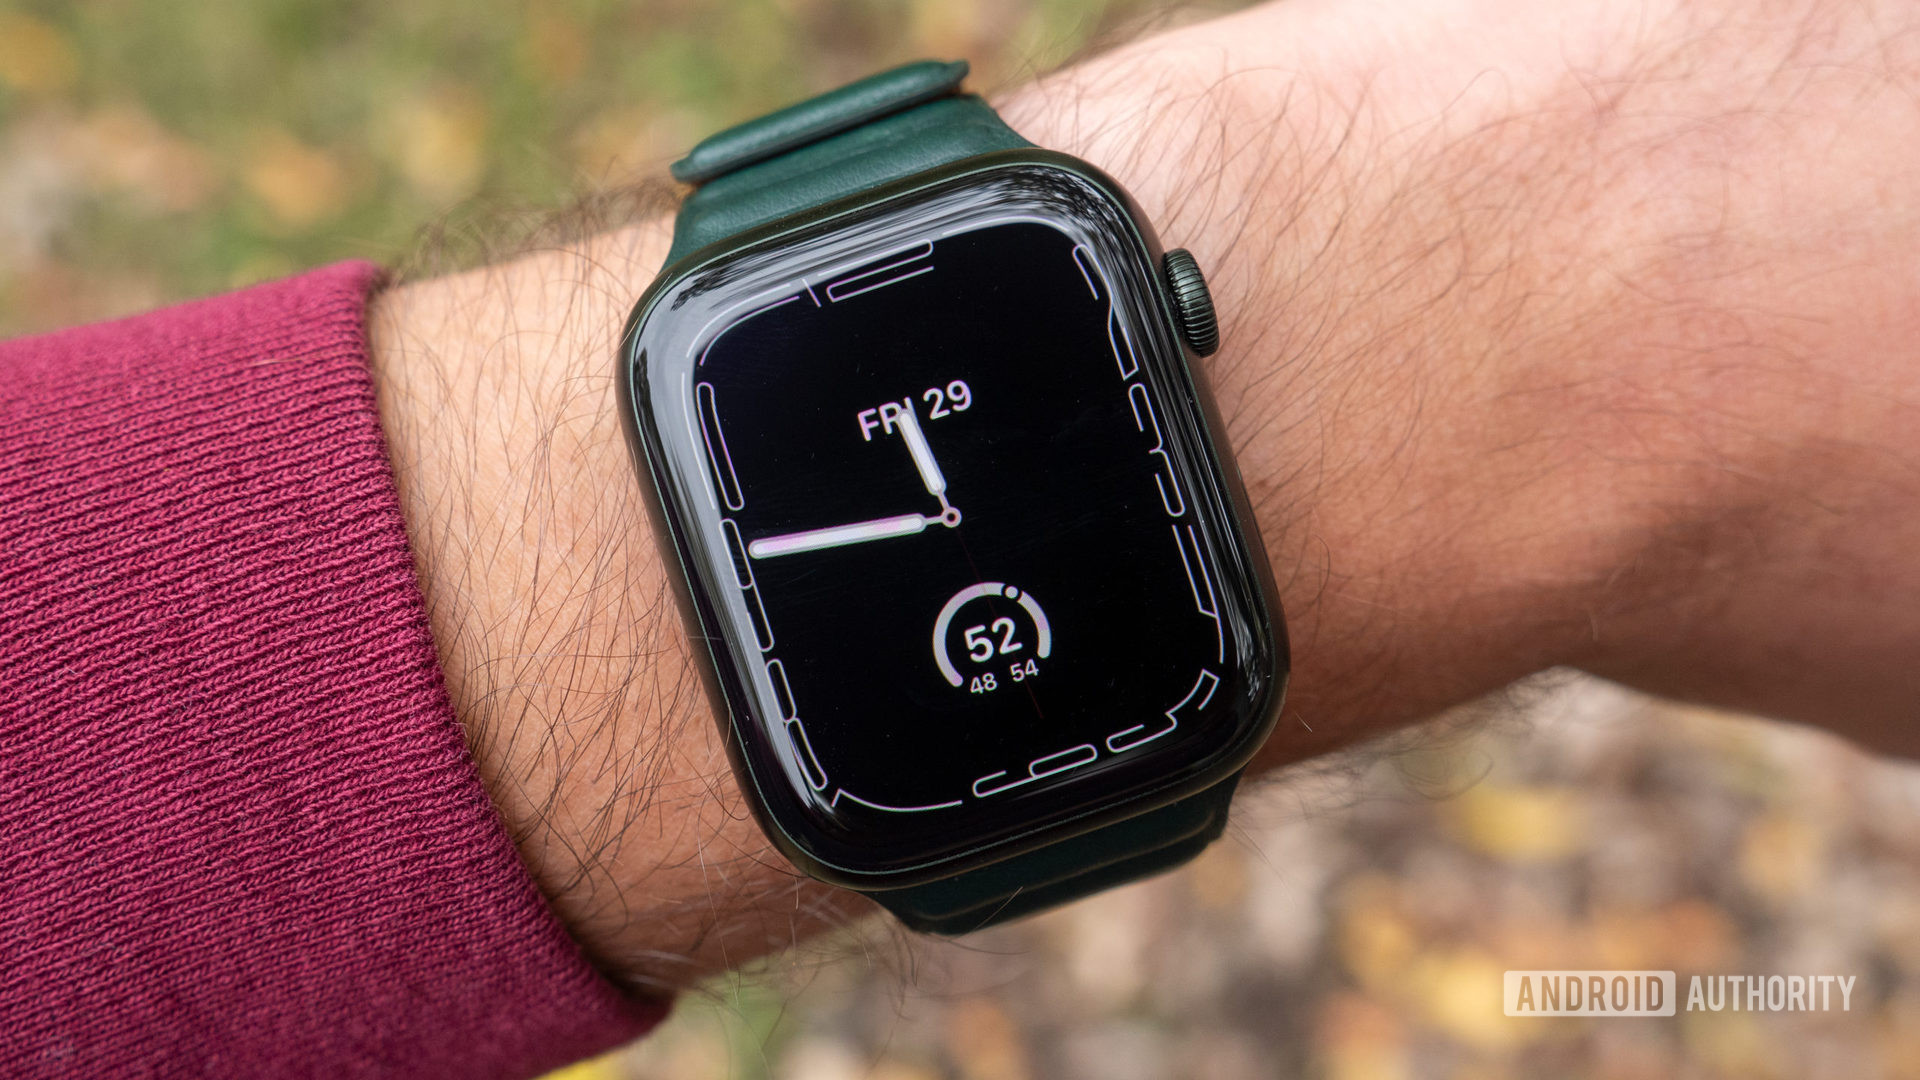 Gambar Apple Watch Series 7 di pergelangan tangan yang menunjukkan tampilan jam Contour selalu aktif